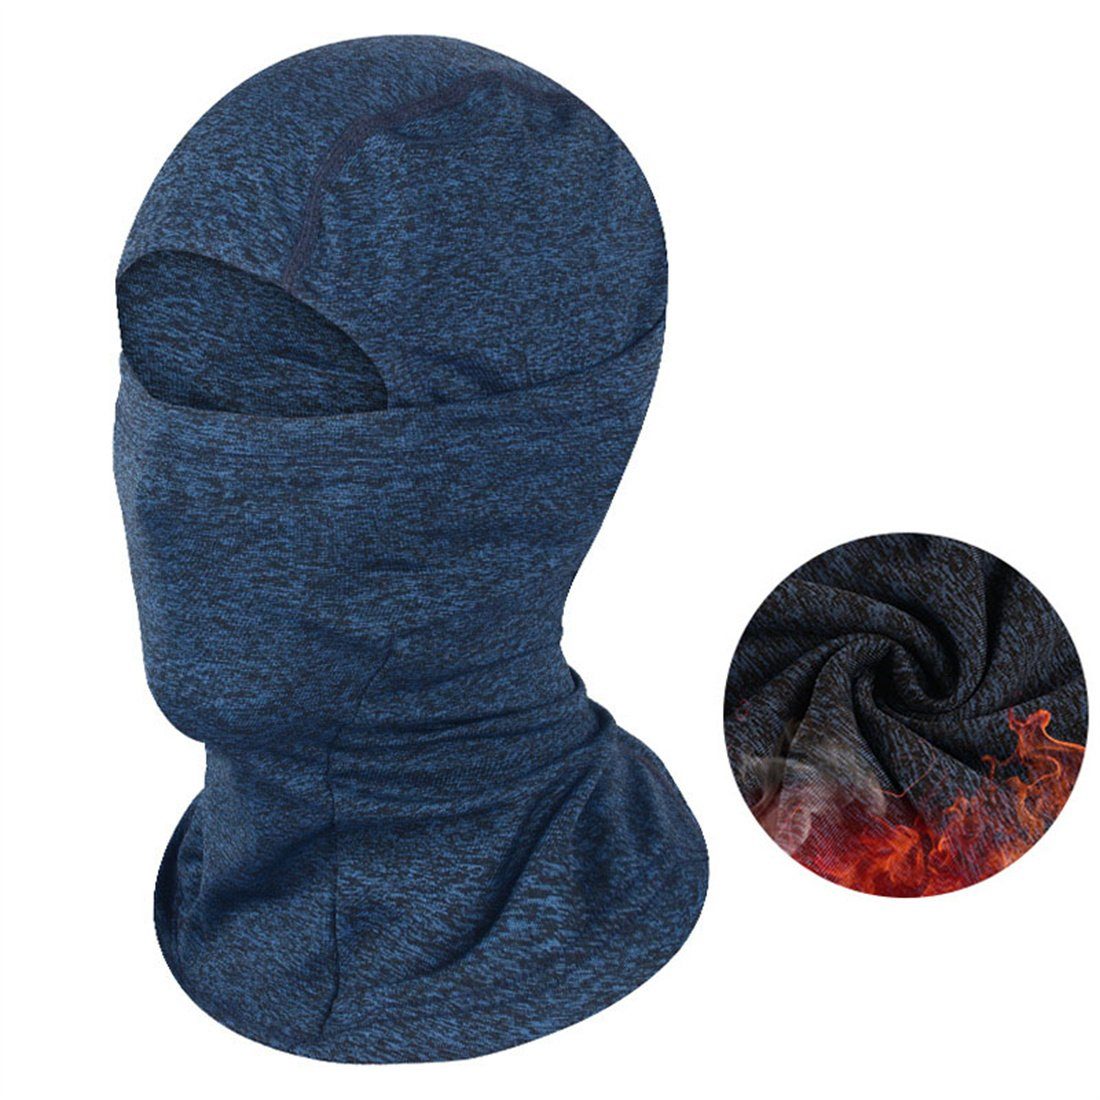 DÖRÖY Sturmhaube Winter Outdoor Kälteschutz Warm Ski Kopfbedeckung, Reiten Masken blau